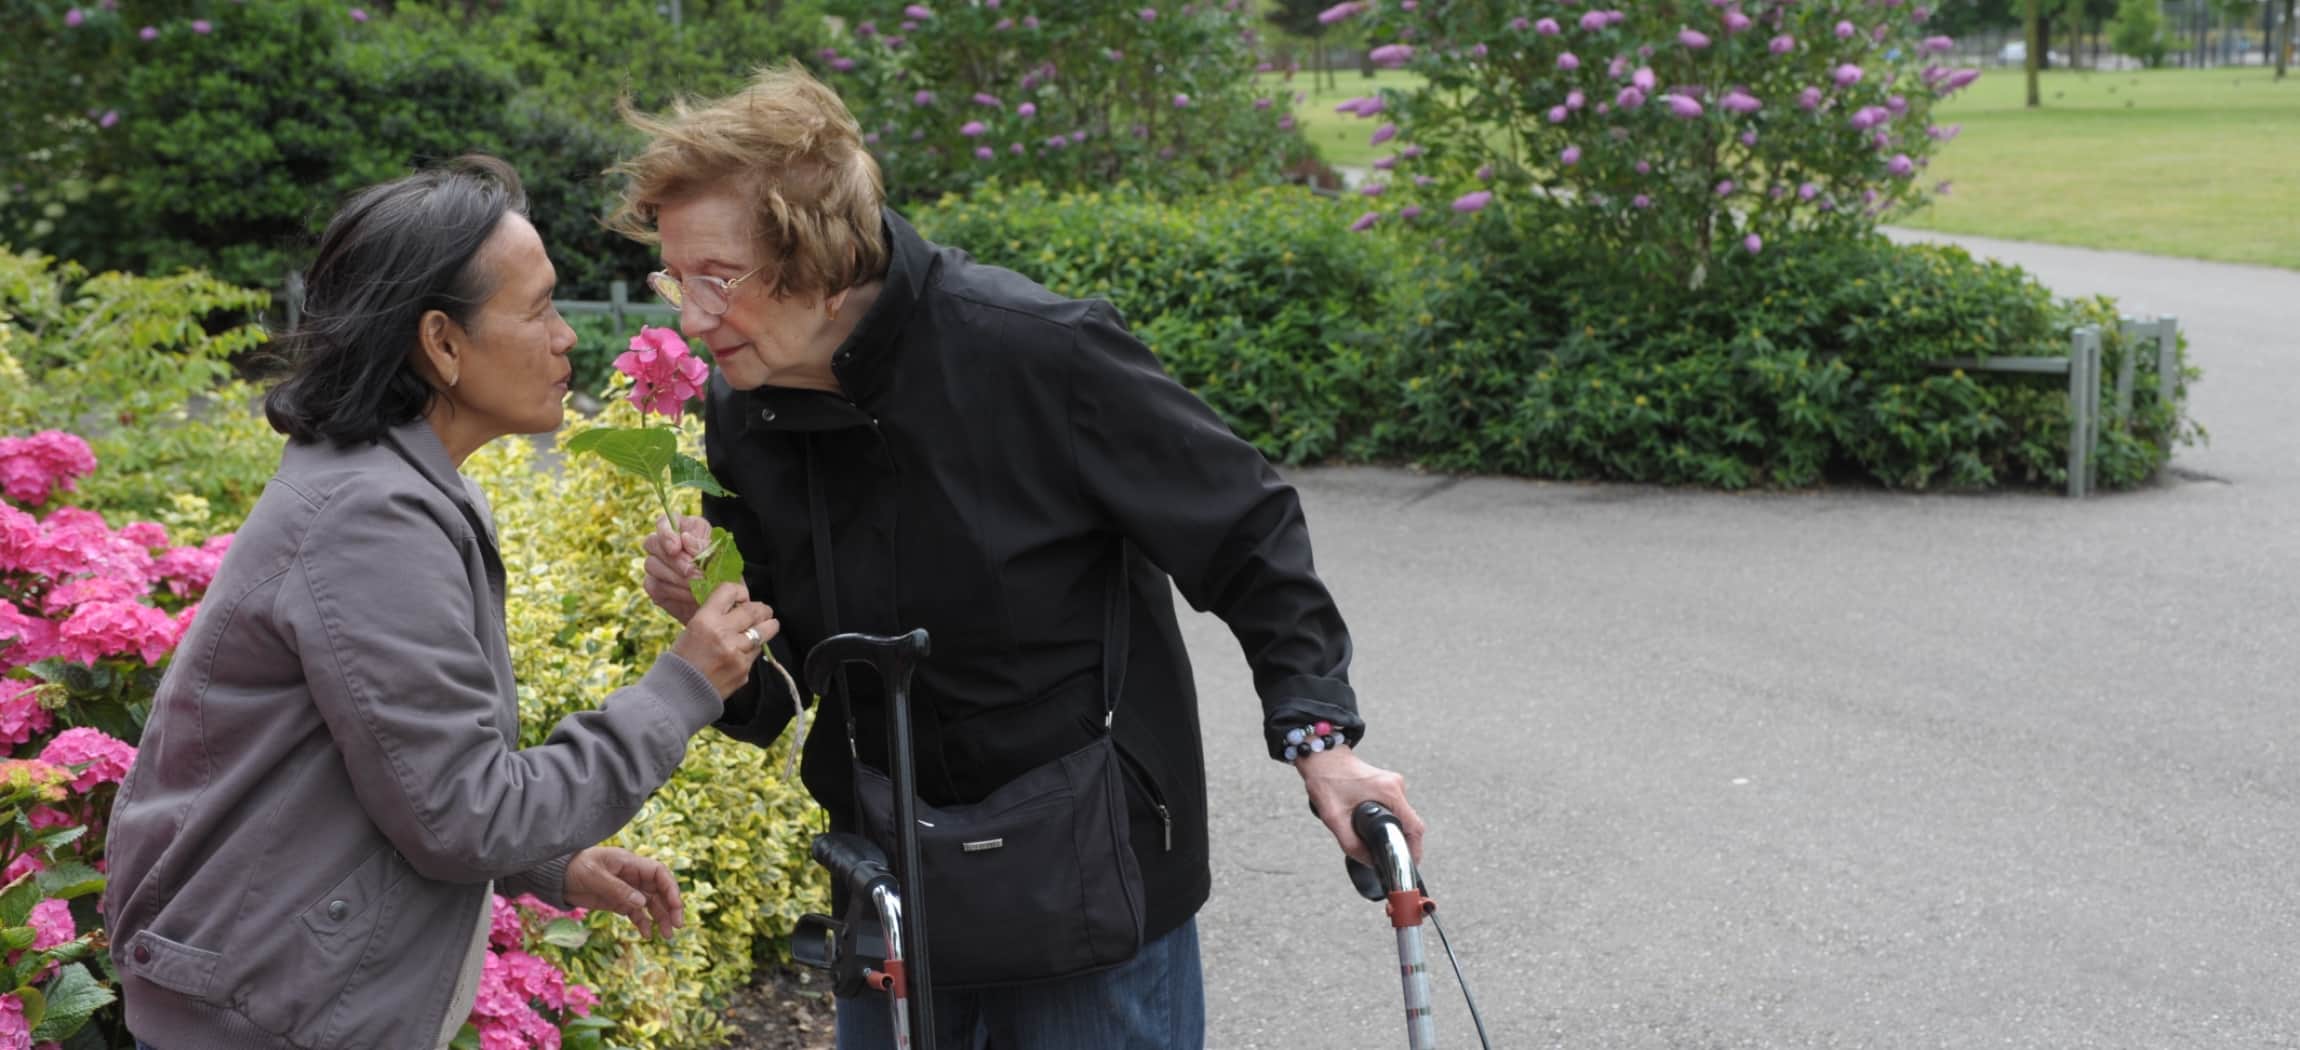 Vrouw met rollator buiten in een park ruikt aan een bloem samen met andere vrouw